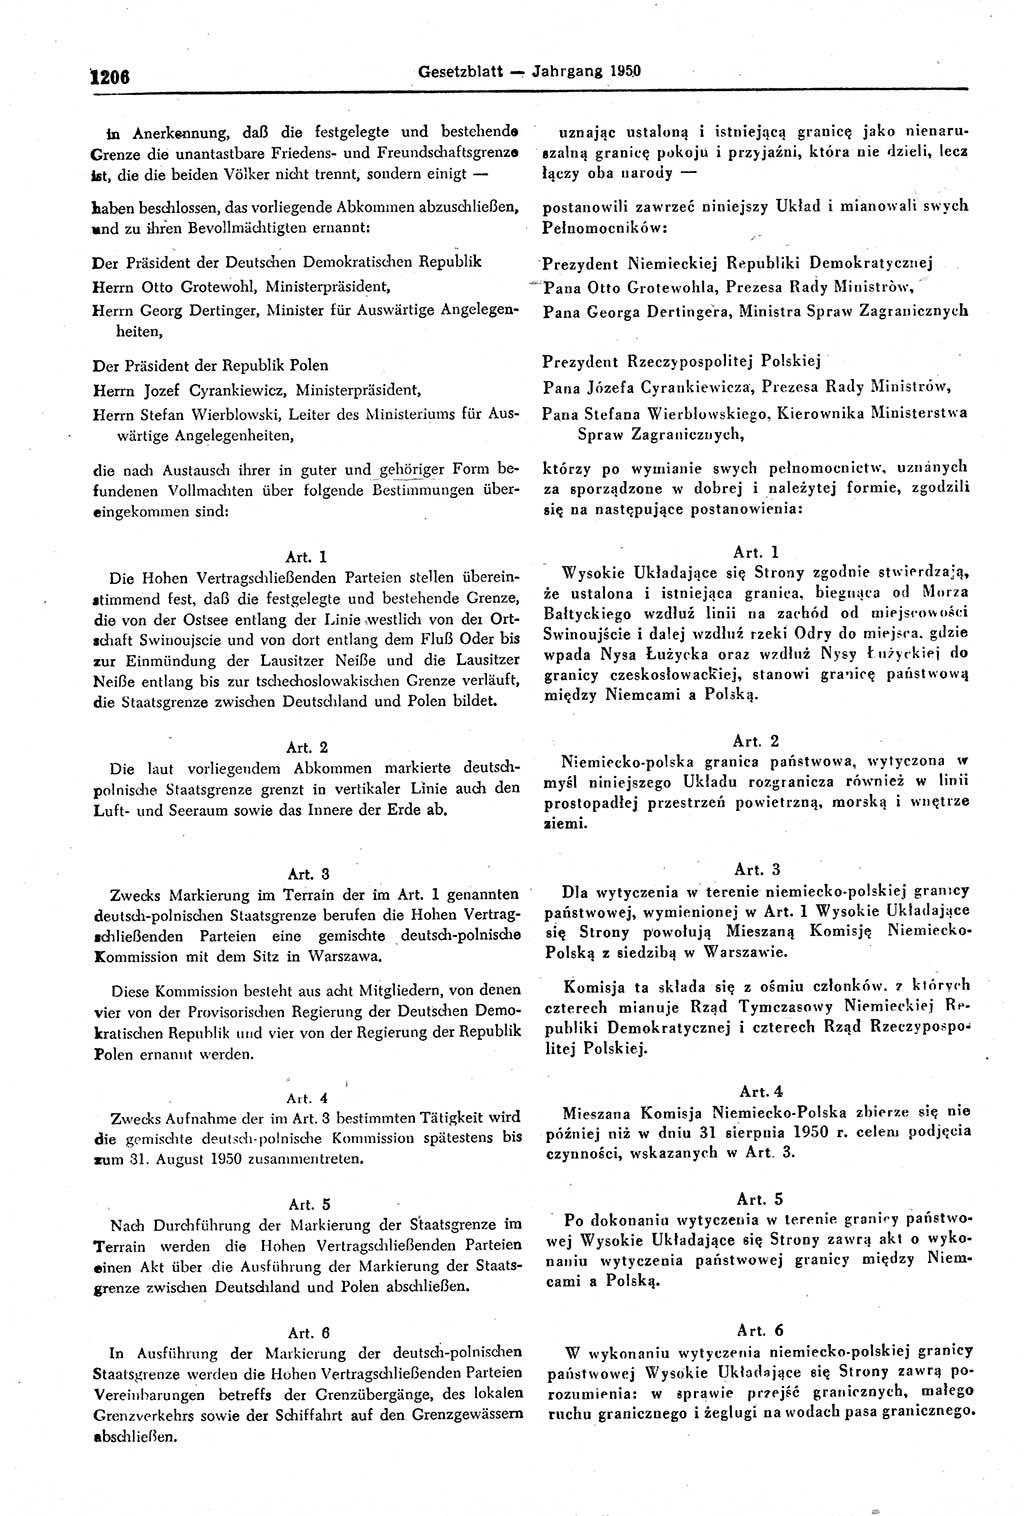 Gesetzblatt (GBl.) der Deutschen Demokratischen Republik (DDR) 1950, Seite 1206 (GBl. DDR 1950, S. 1206)